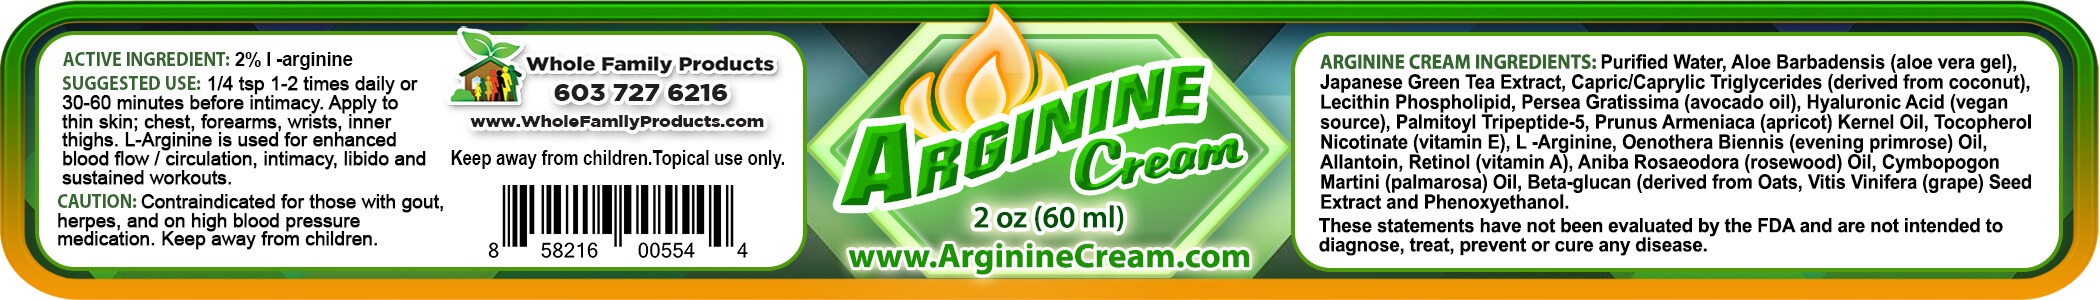 Arginine Cream 2% L Arginine 2oz Jar Product Label